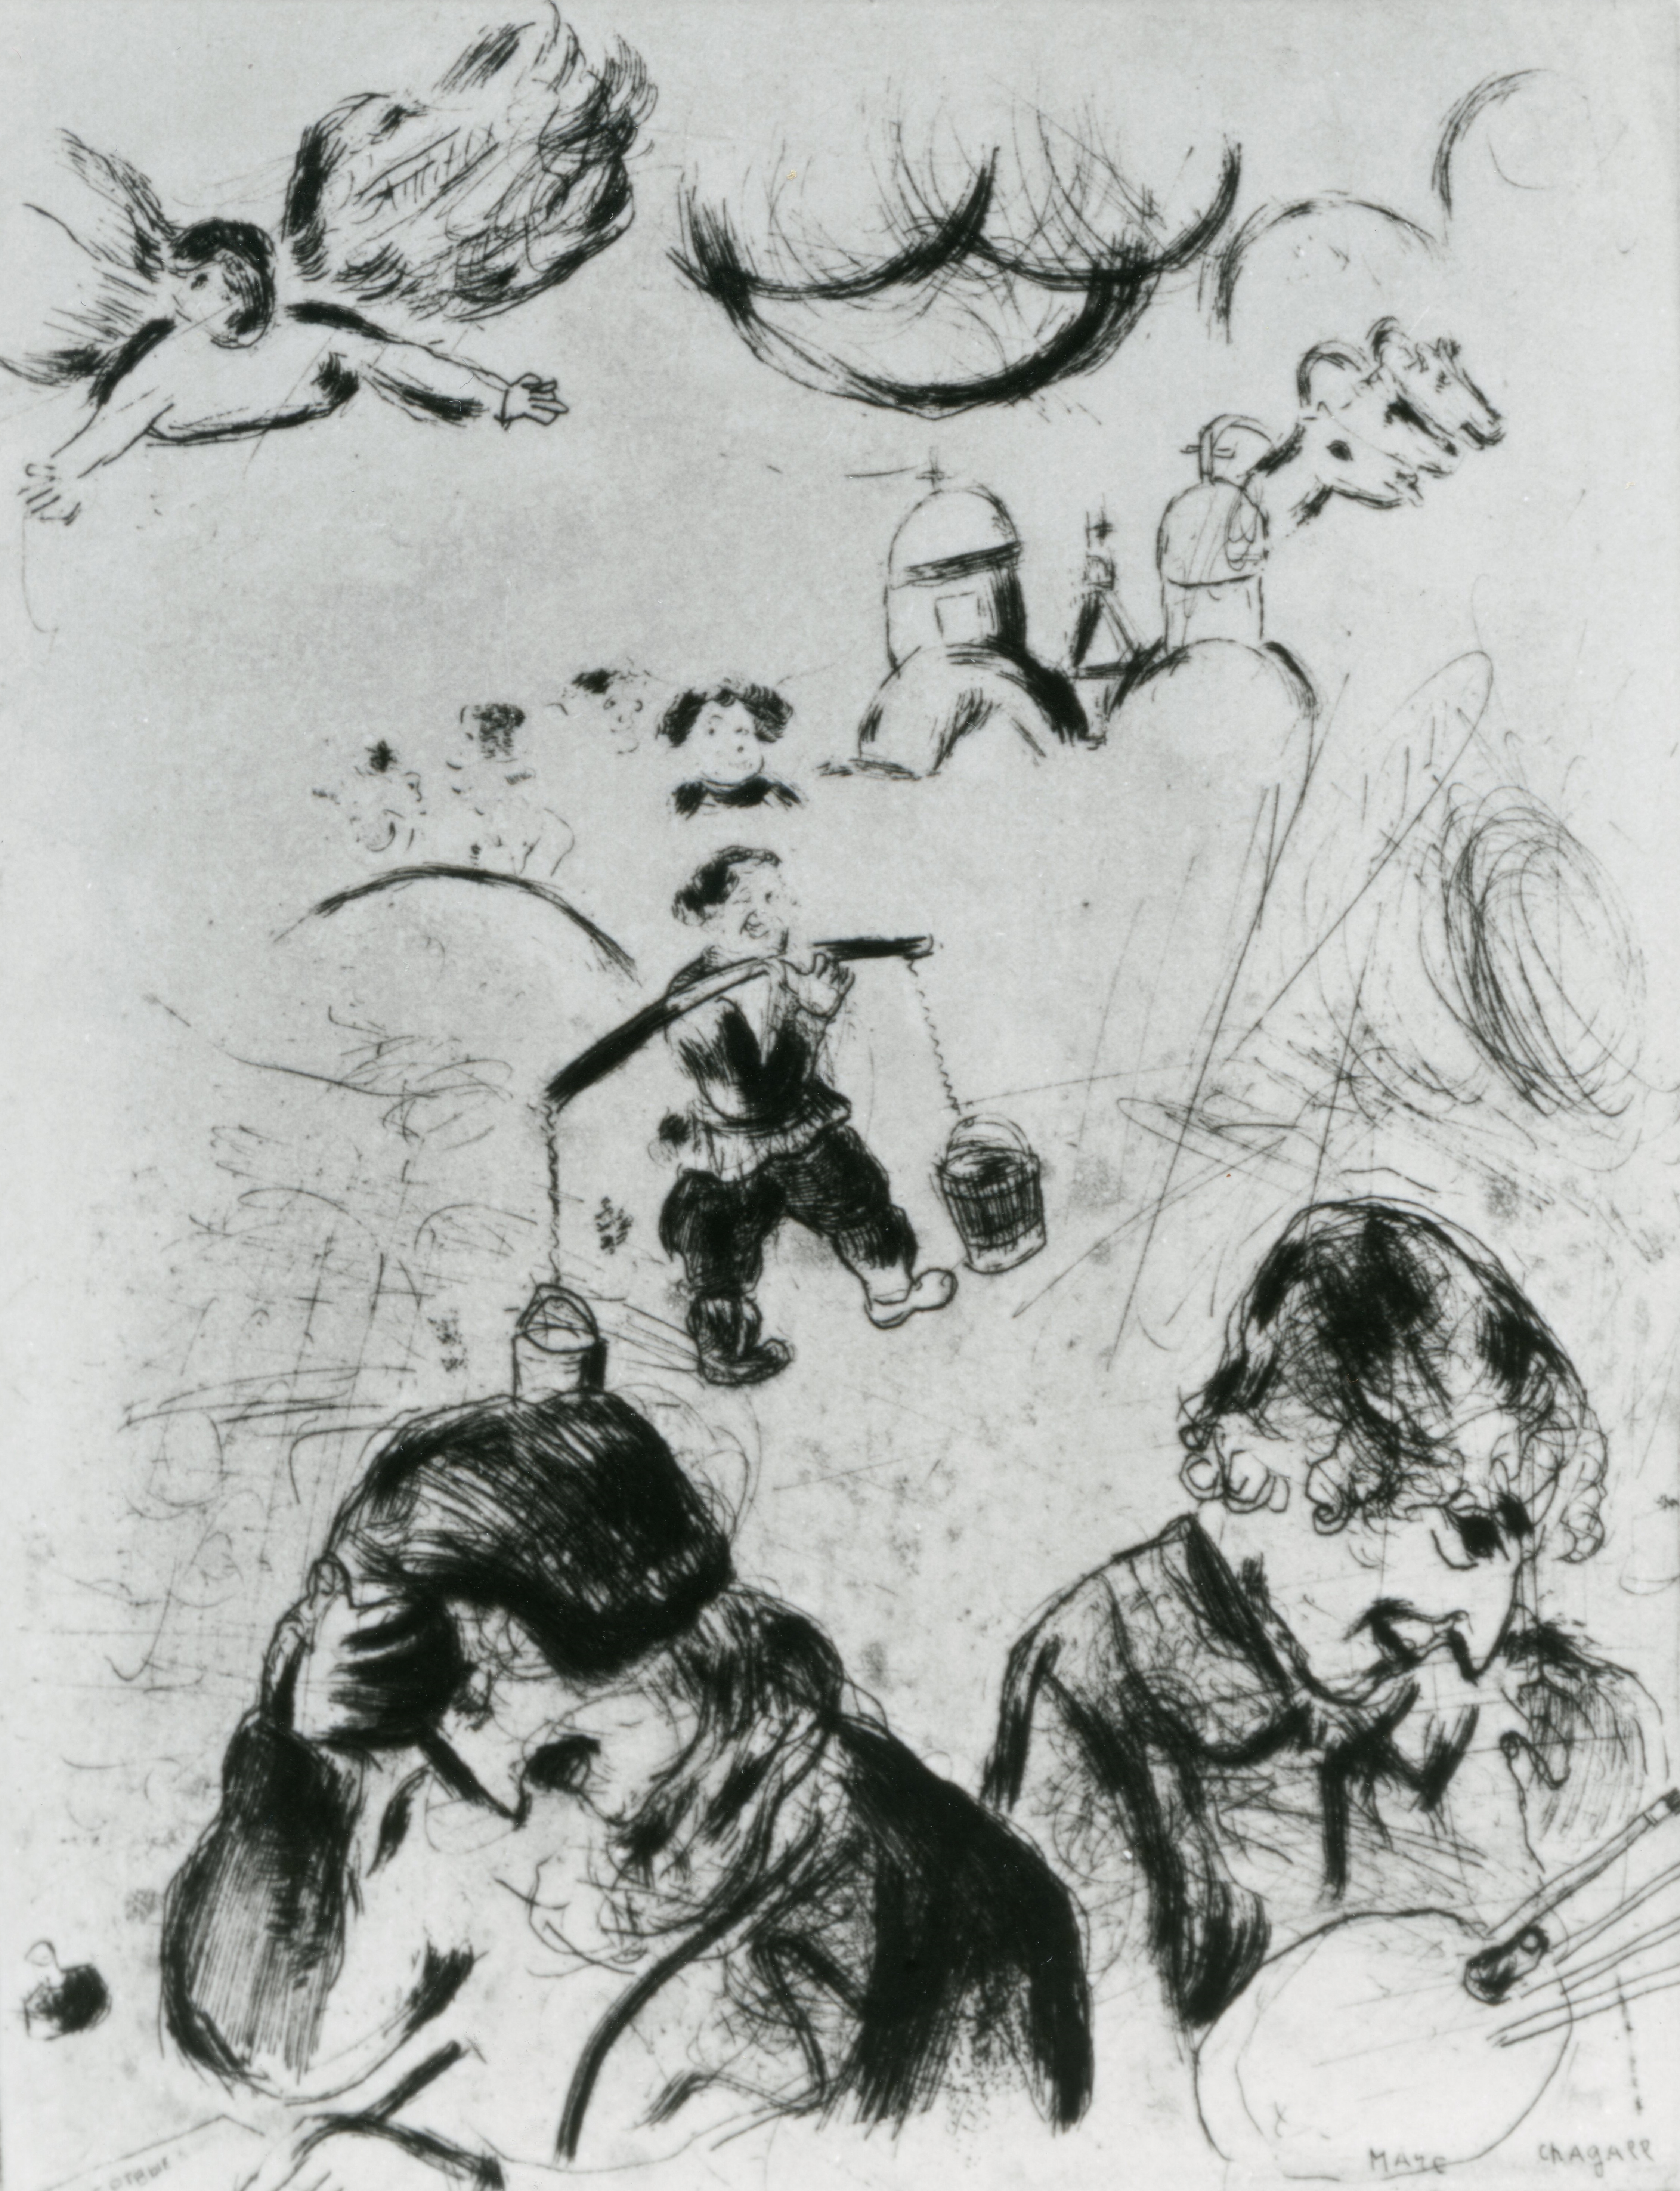 シャガール・イン・プリント<br>マルク・シャガール『死せる魂』より《ゴーゴリとシャガール》1925 年<br>© ADAGP, Paris & JASPAR, Tokyo, 2022, Chagall®　G2792